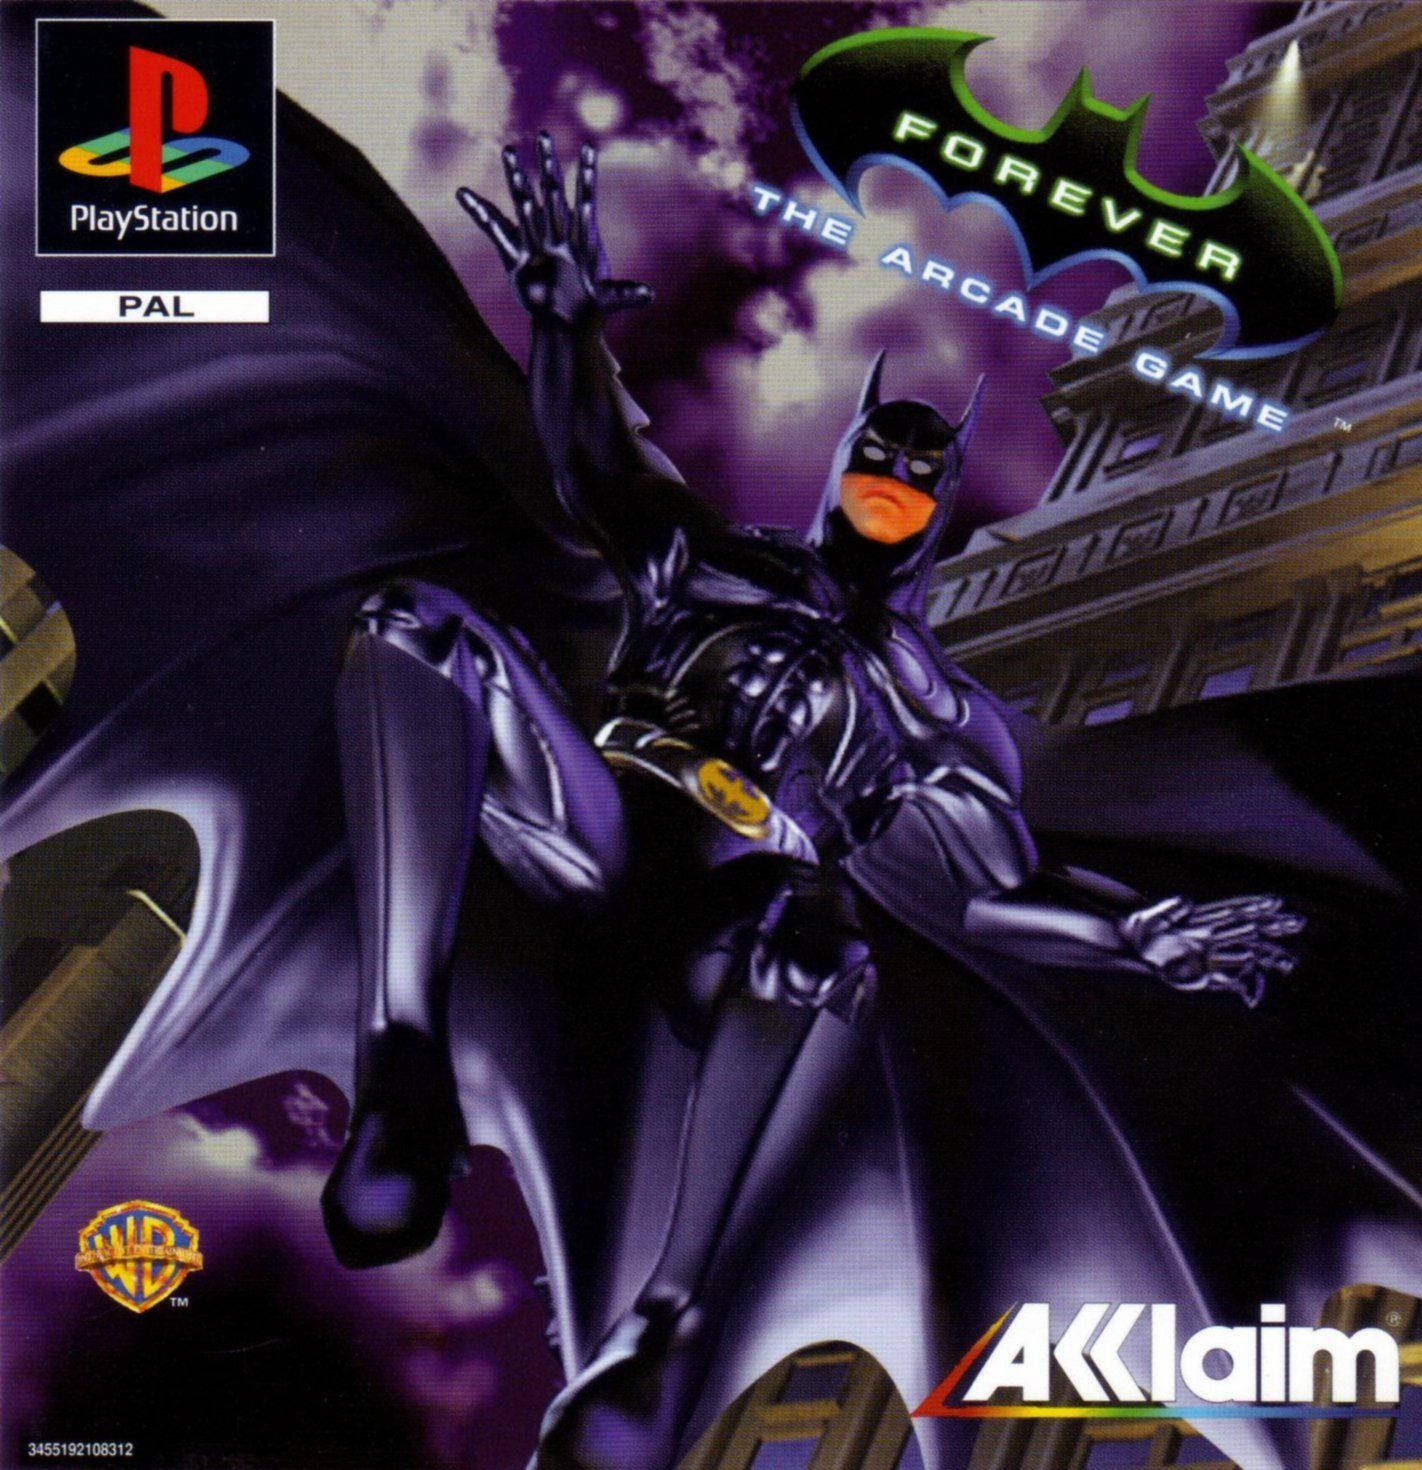 دانلود نسخه فشرده بازی Batman Forever با حجم 10 مگابایت